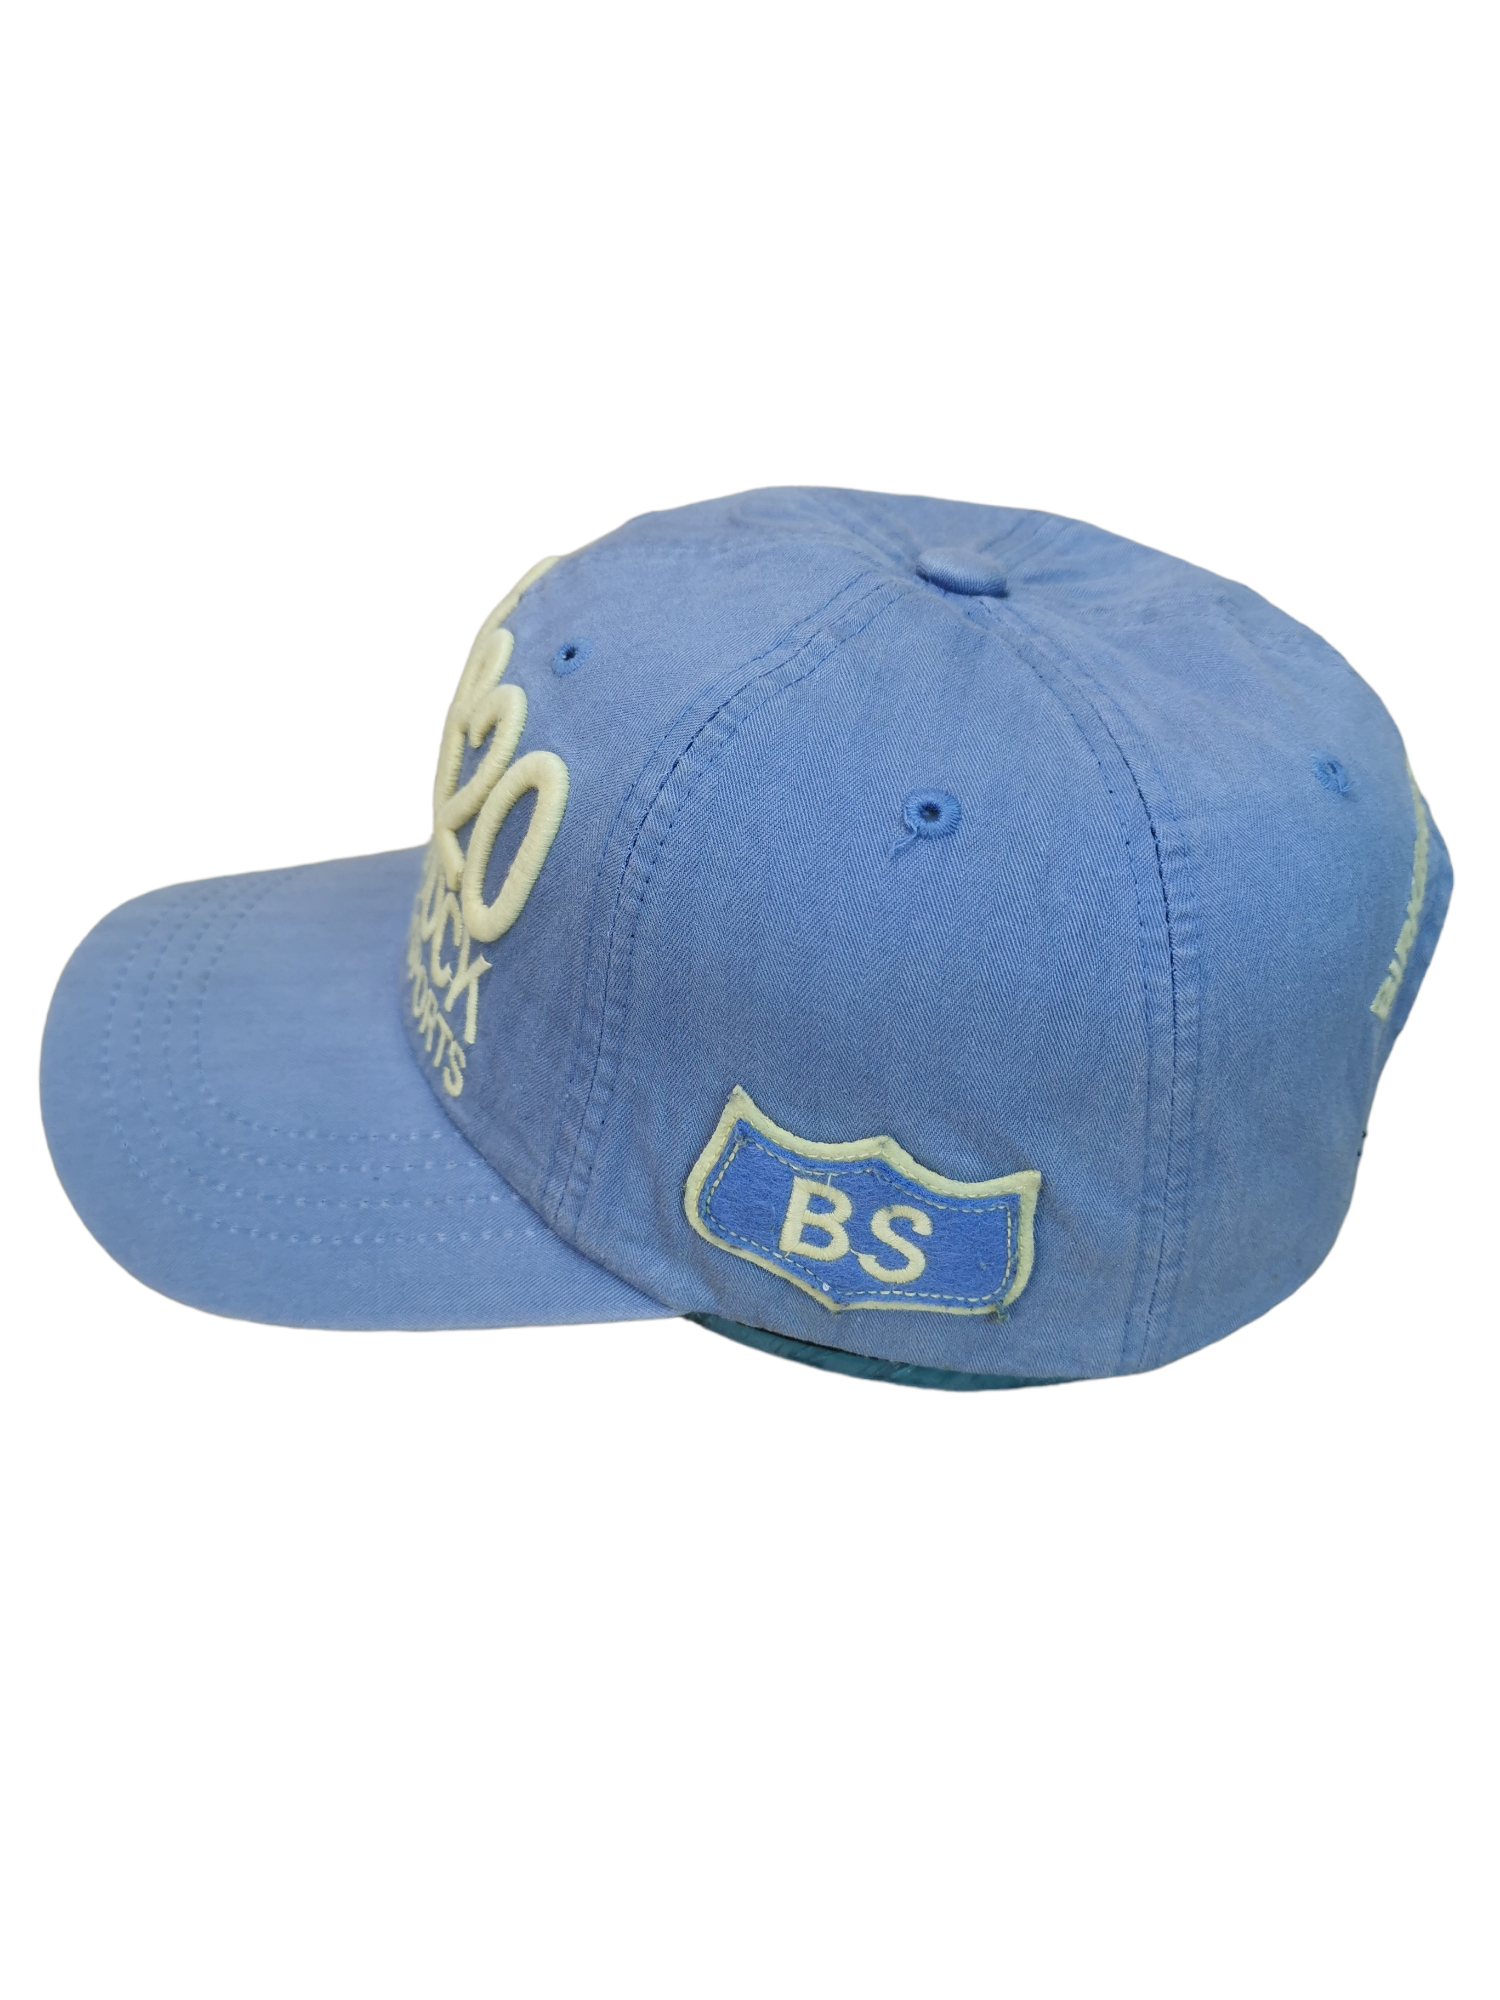 BIRKENSTOCK BRAND STREETWEAR HAT CAP - 2